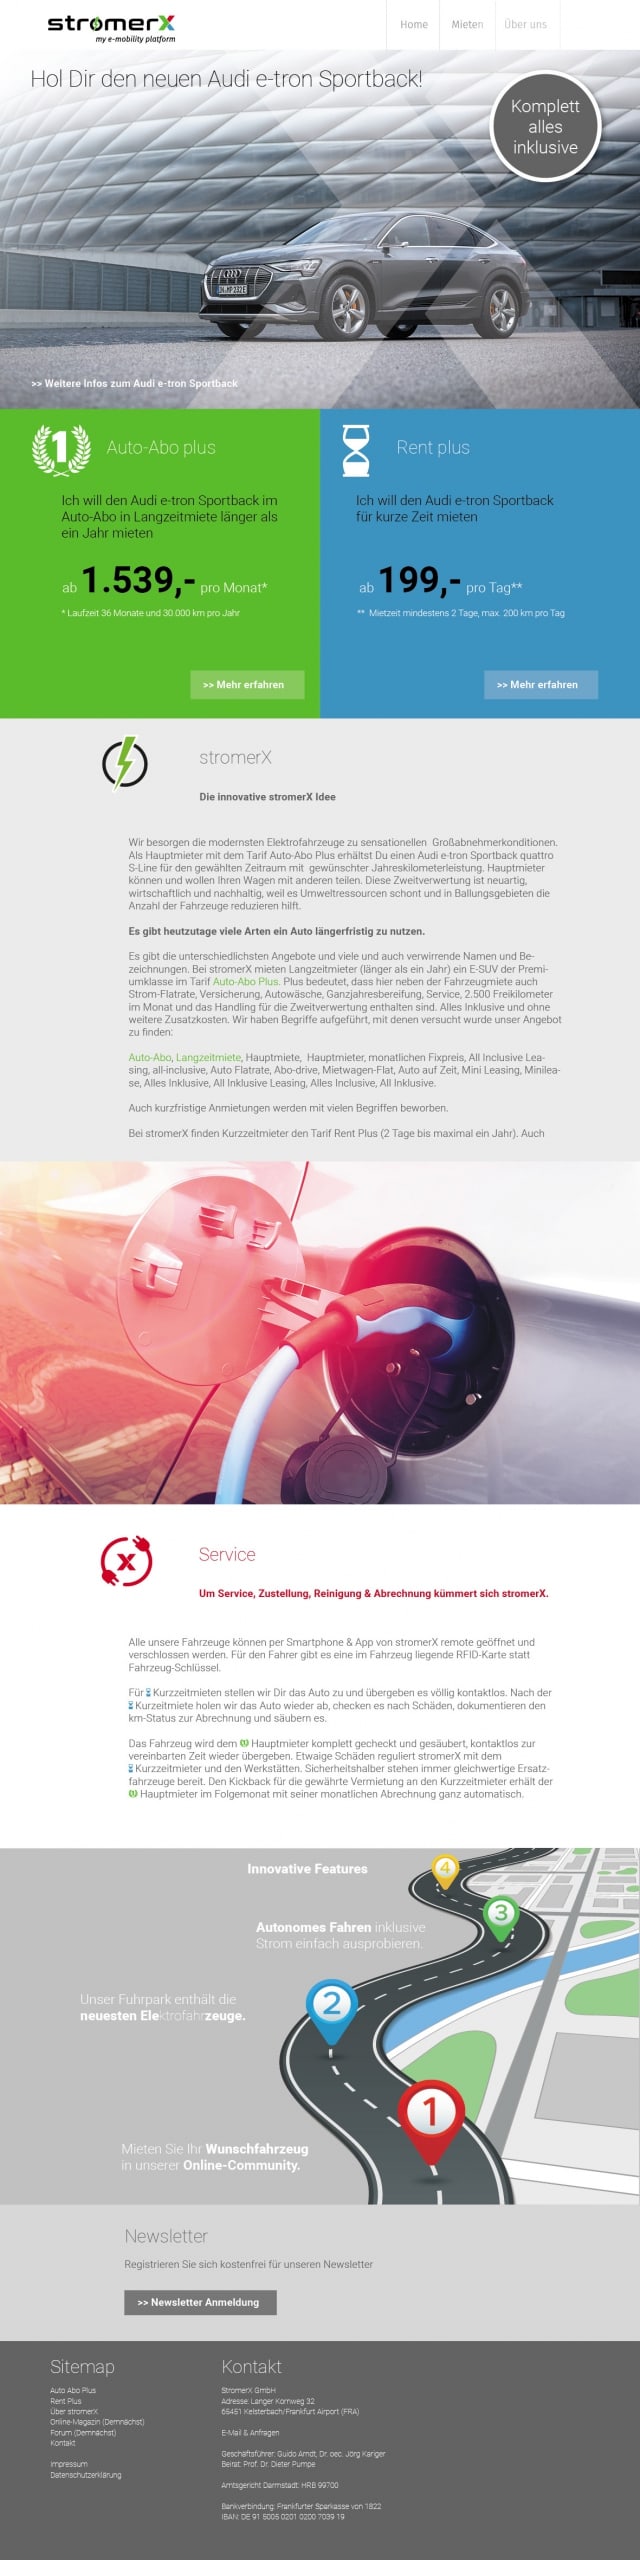 Corporate Design und Webdesign und Entwicklung für E-Mobilität Internet Plattform StromerX durch Ronald Wissler Visuelle Kommunikation